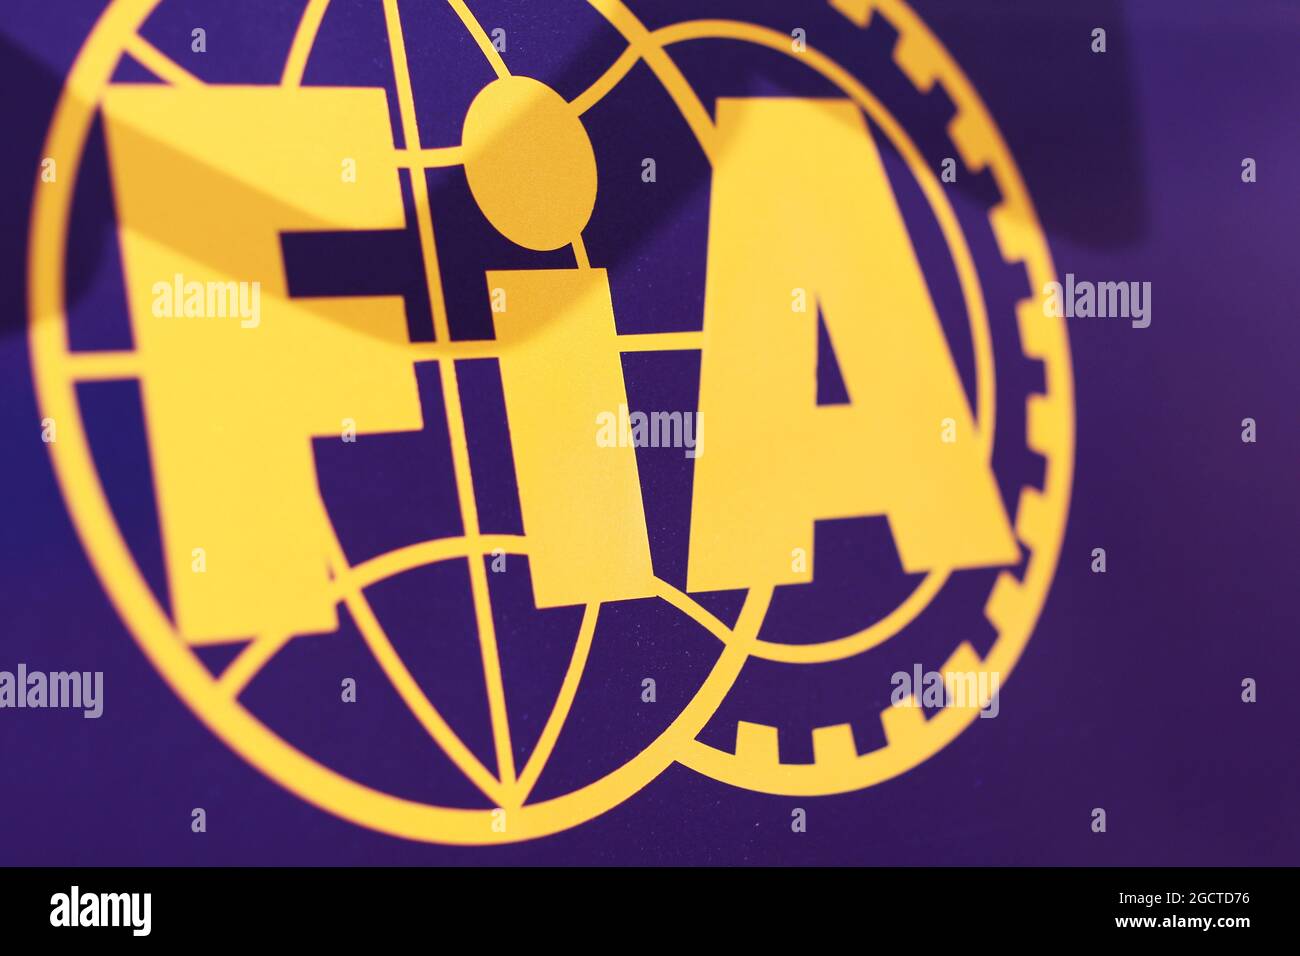 Logo FIA. Test de Formule 1, deuxième jour, mercredi 29 janvier 2014. Jerez, Espagne. Banque D'Images